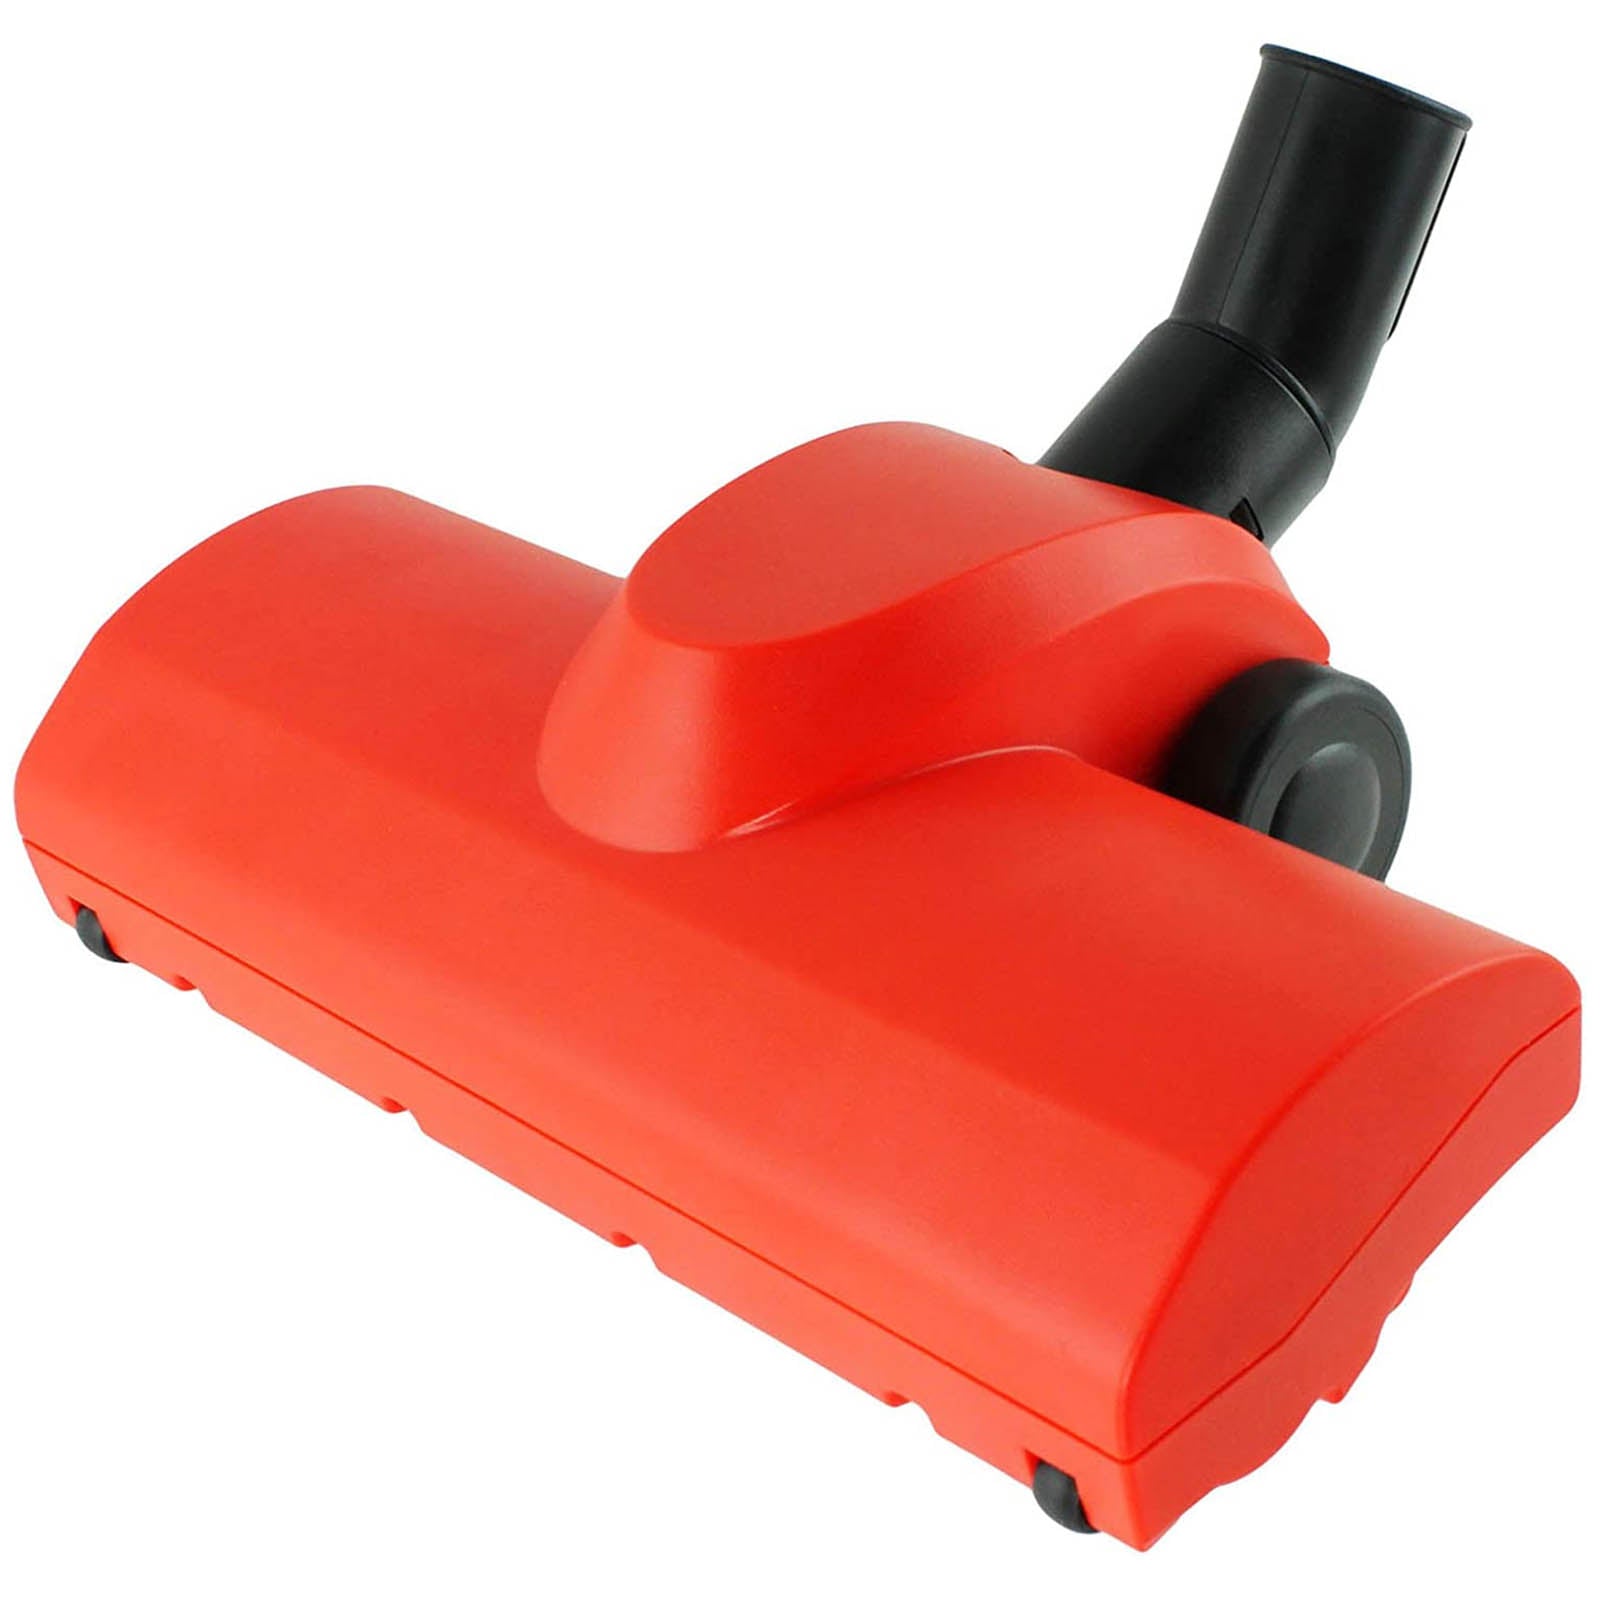 Airo Turbine Turbo Carpet Brush Tool for Numatic Henry Hetty Vacuum Cleaner